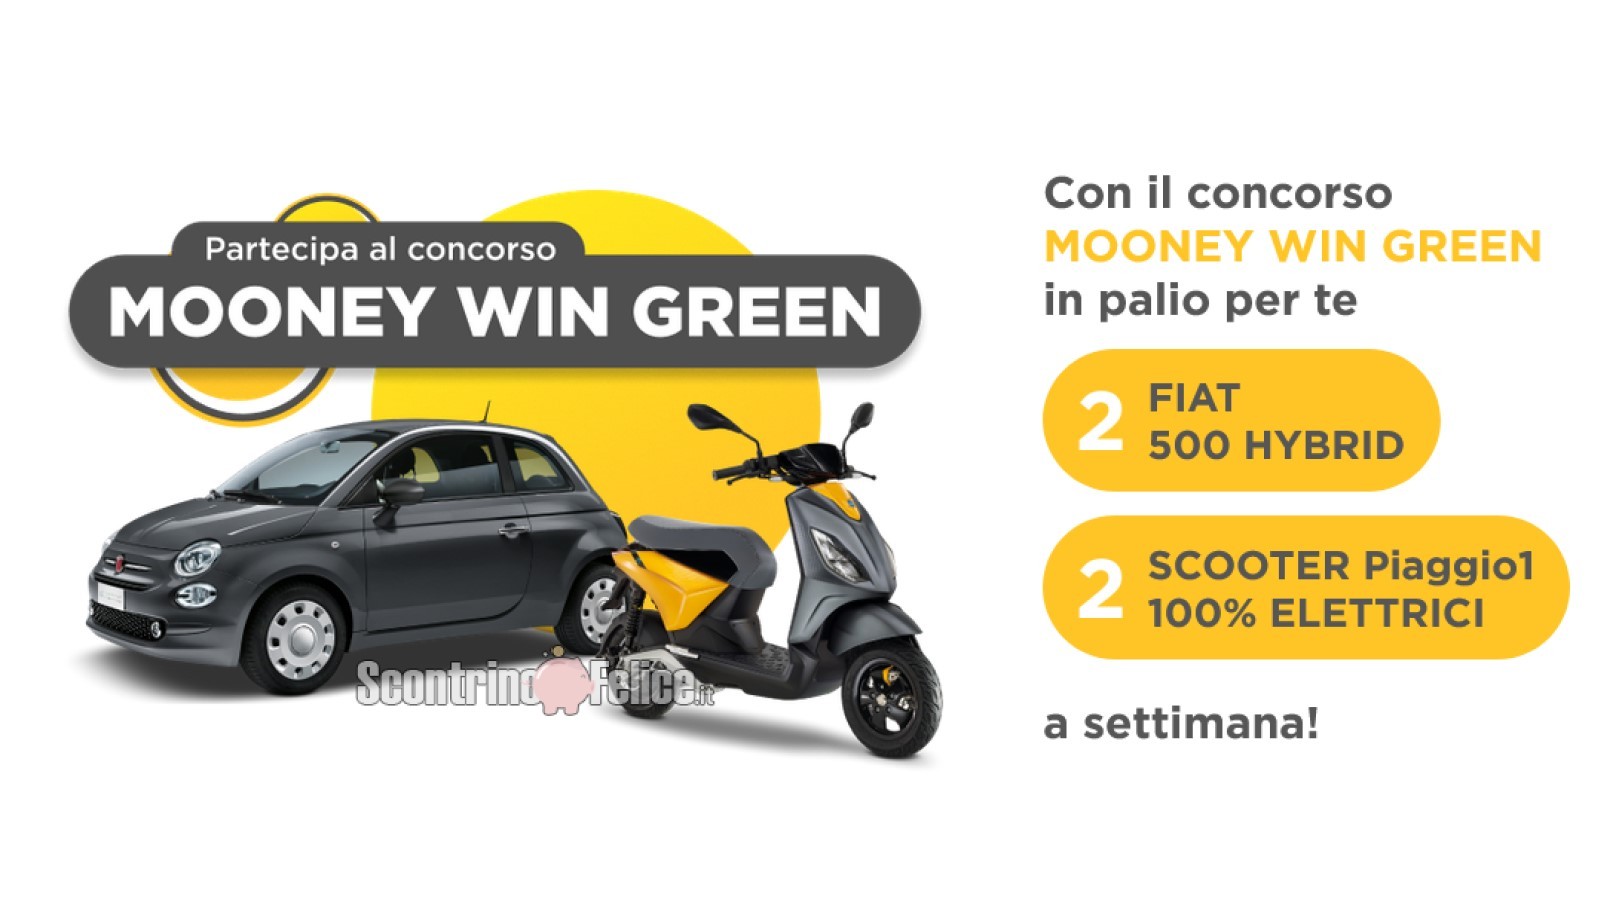 Concorso Mooney Win Green: paga e vinci SUBITO auto Fiat 500 Hybrid e scooter Piaggio1 - 100% elettrici